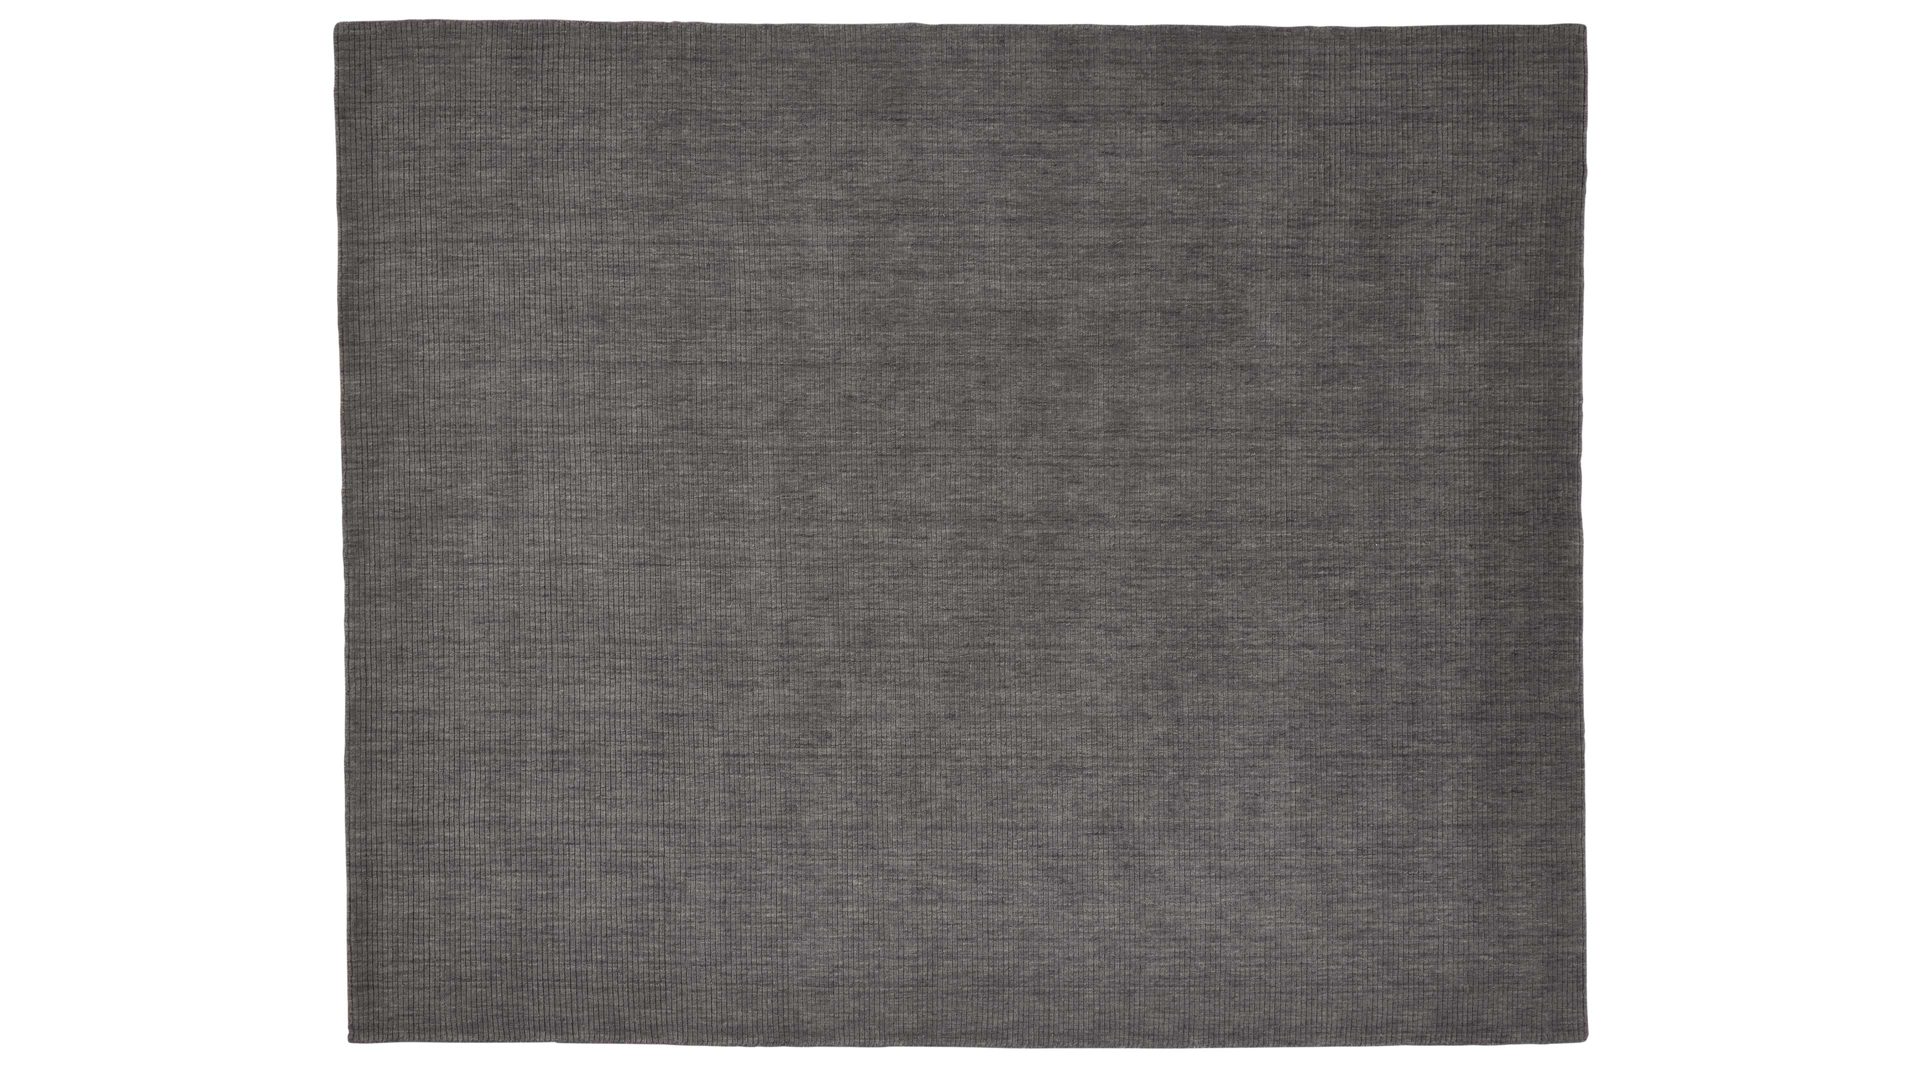 Handwebteppich Interliving aus Naturfaser in Grau Interliving Teppich Serie R-8120 Grau - ca. 70 x 140 cm